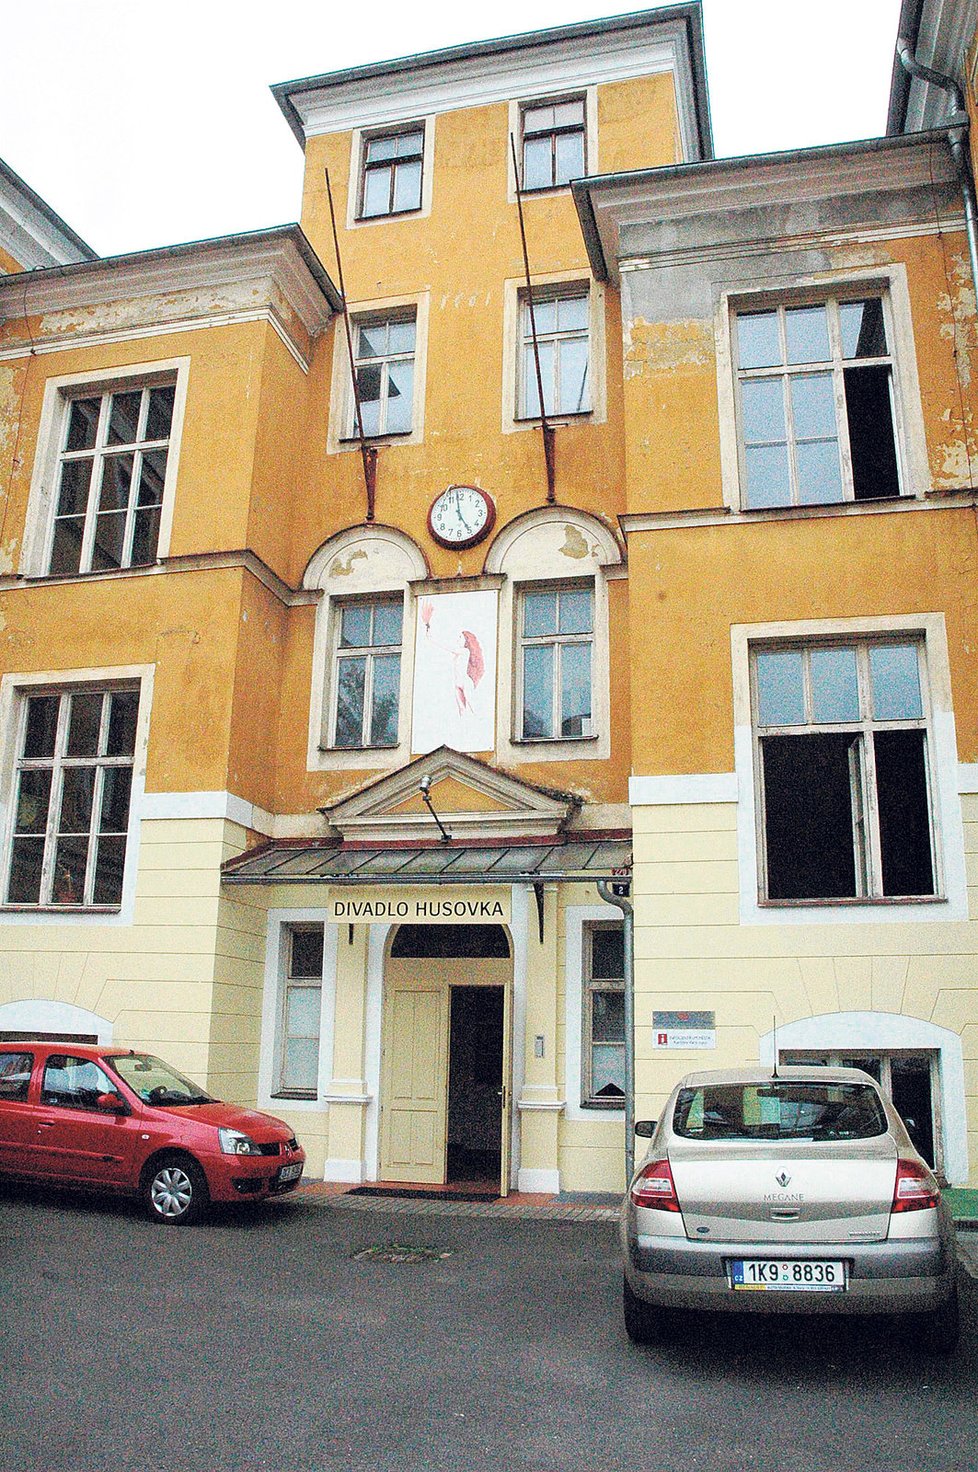 Divadlo Husovka